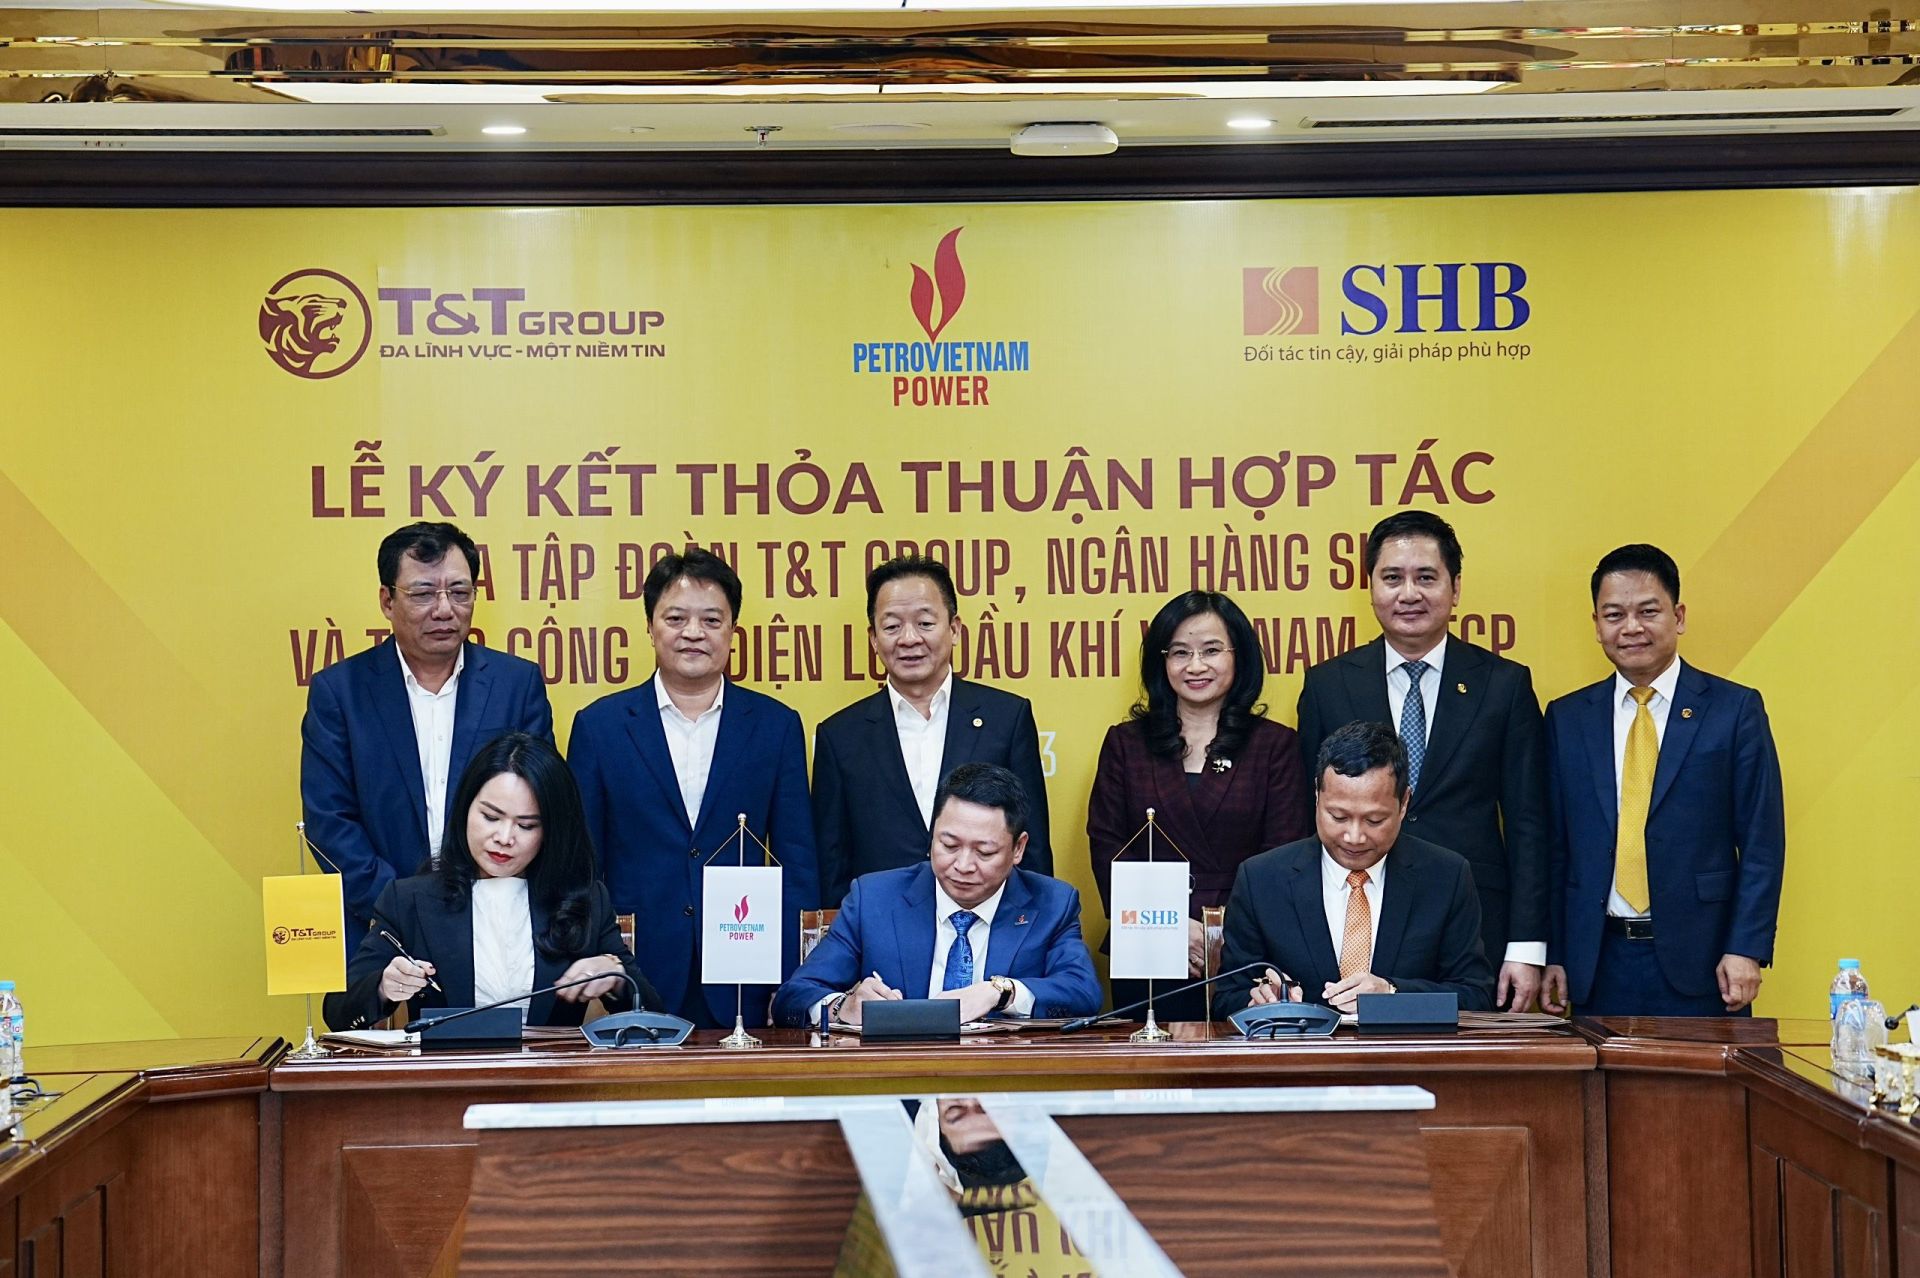 PV Power ký kết thỏa thuận hợp tác với Tập đoàn T&T Group và Ngân hàng SHB